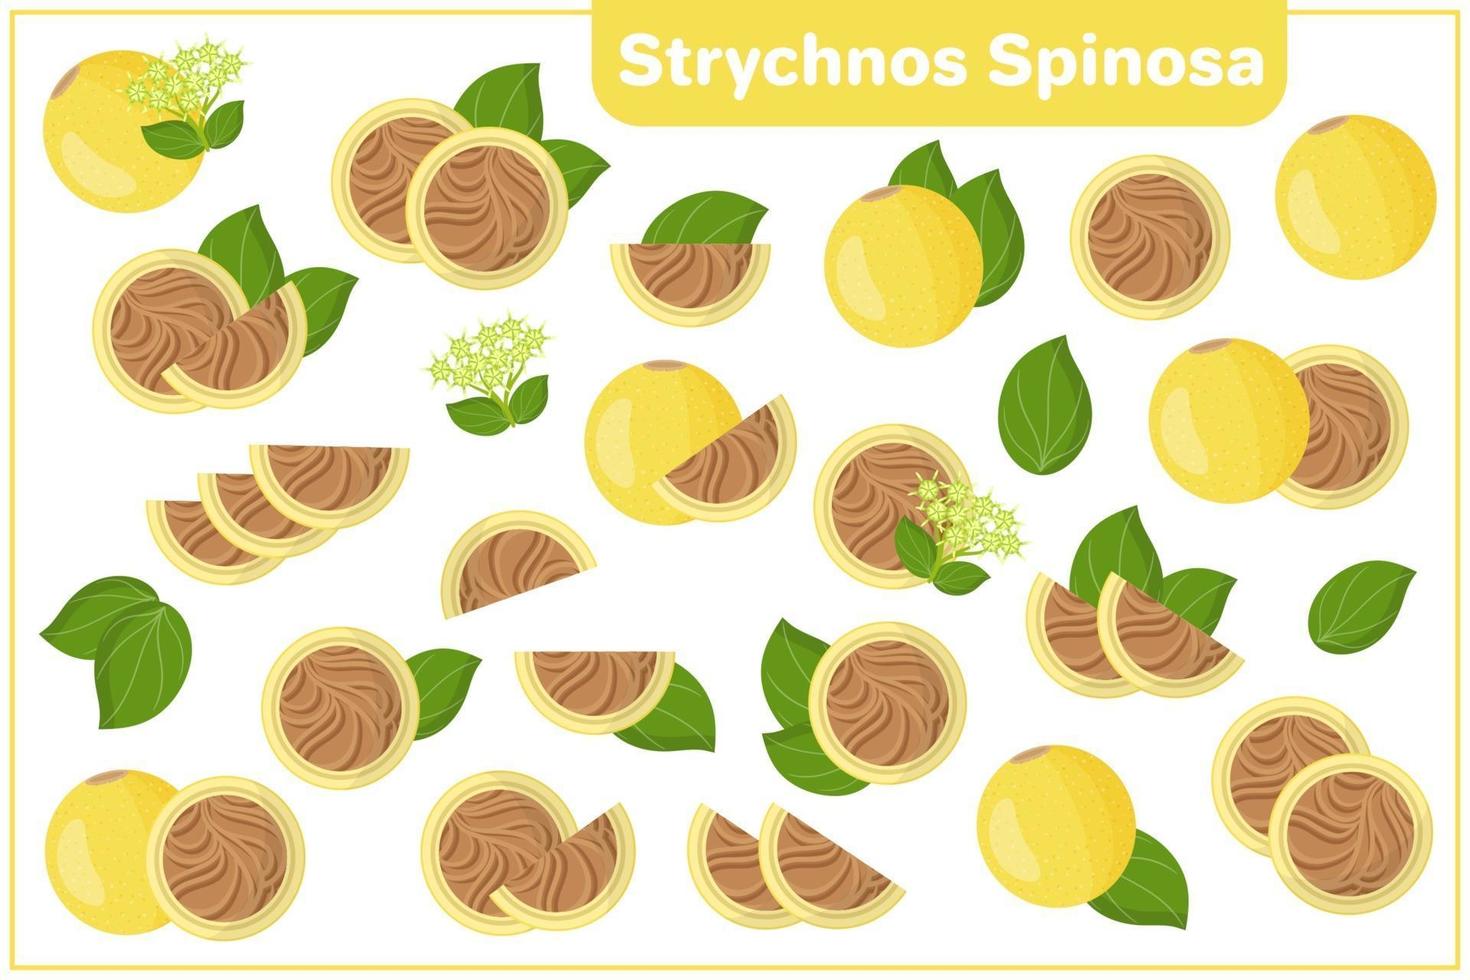 Satz von Vektorkarikaturillustrationen mit exotischen Früchten des Strychnos spinosa, Blumen, Blätter lokalisiert auf weißem Hintergrund vektor